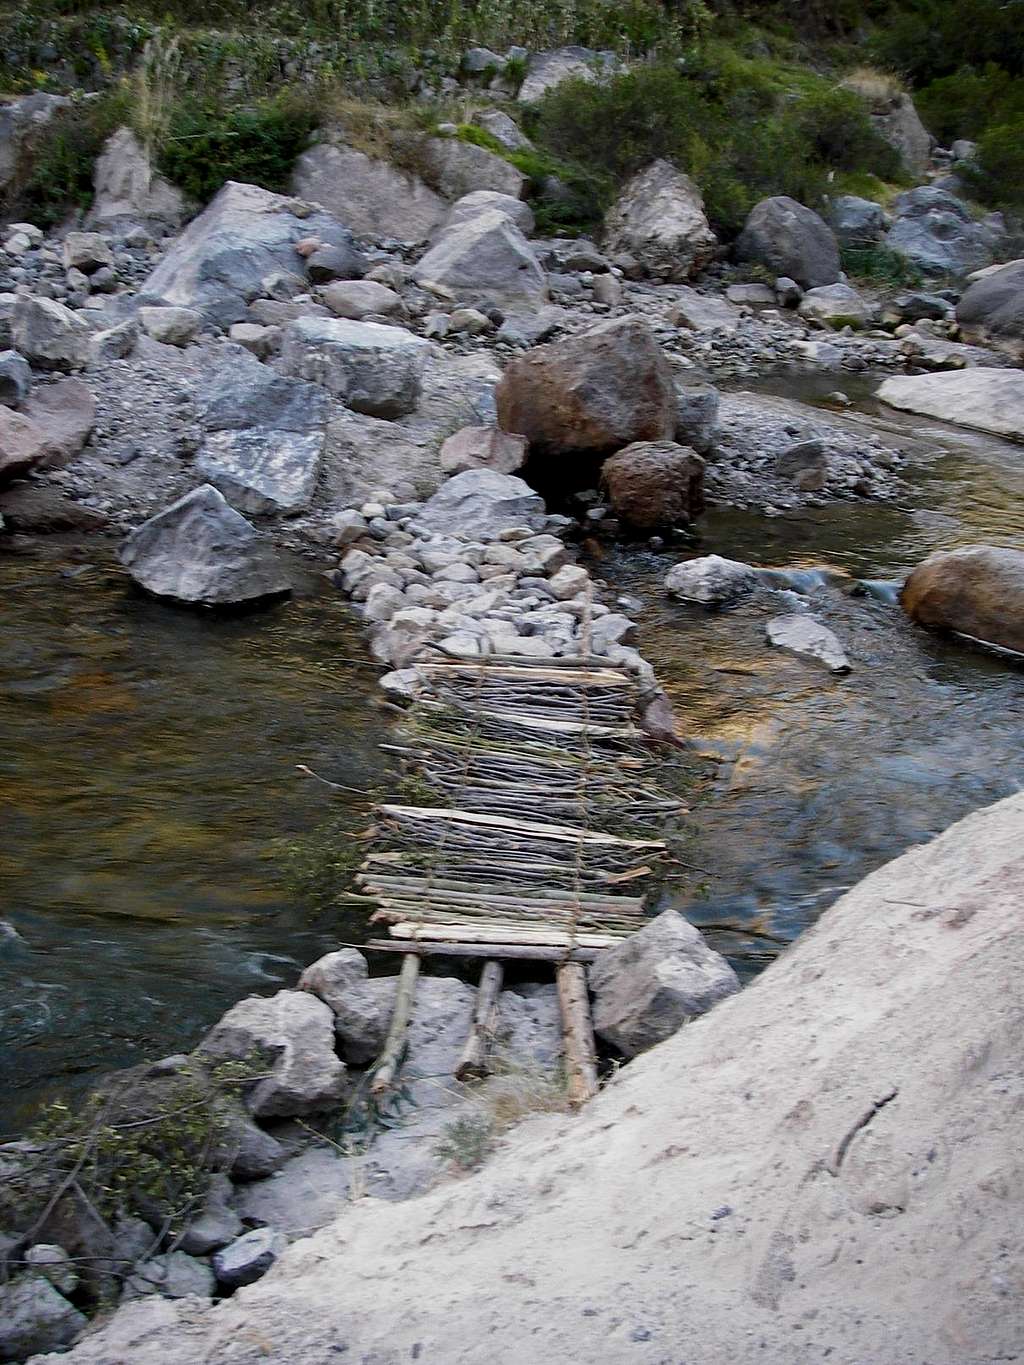 Seasonal Footbridge Over the Mungi River